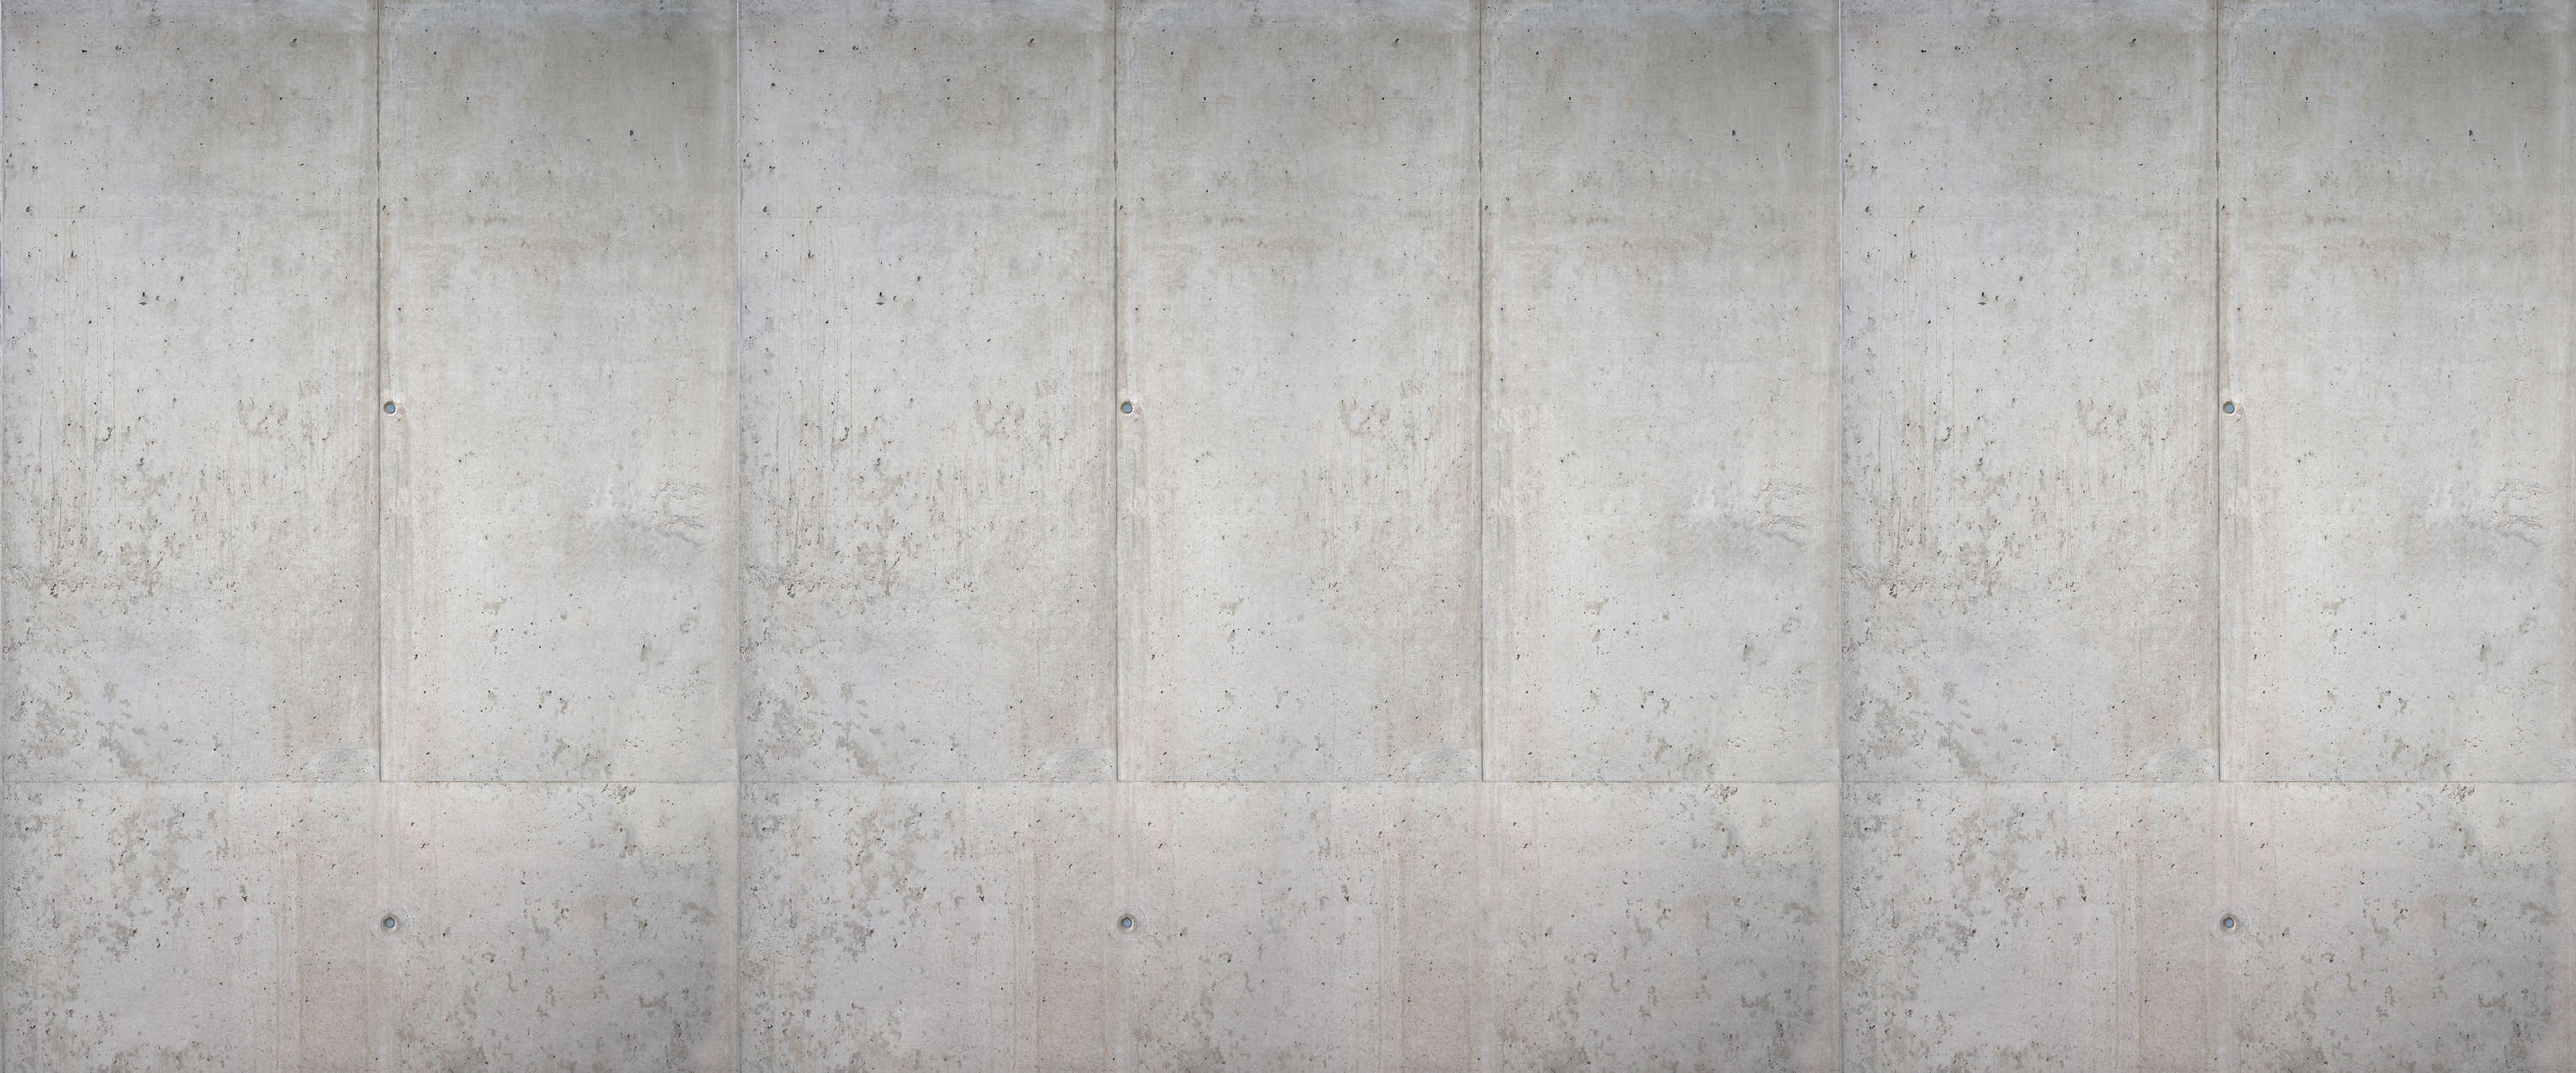             Fotomurali in cemento Muro in cemento a vista in stile industriale
        